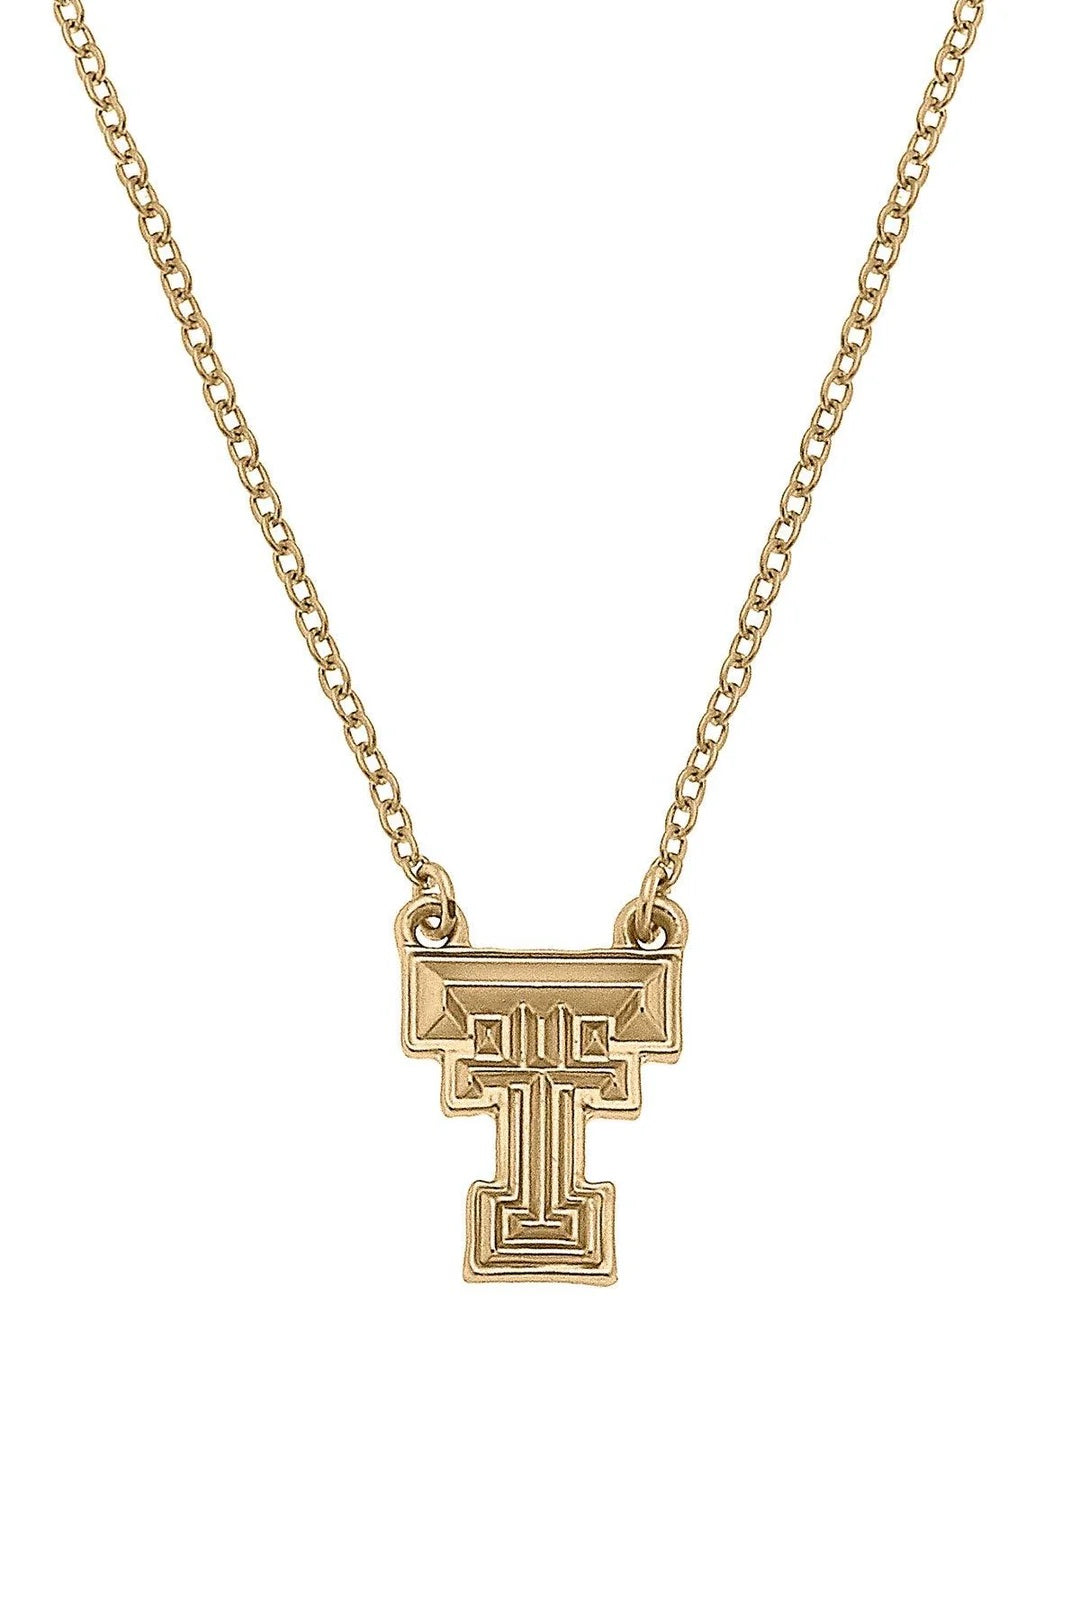 Texas Tech 24k Gold Necklace